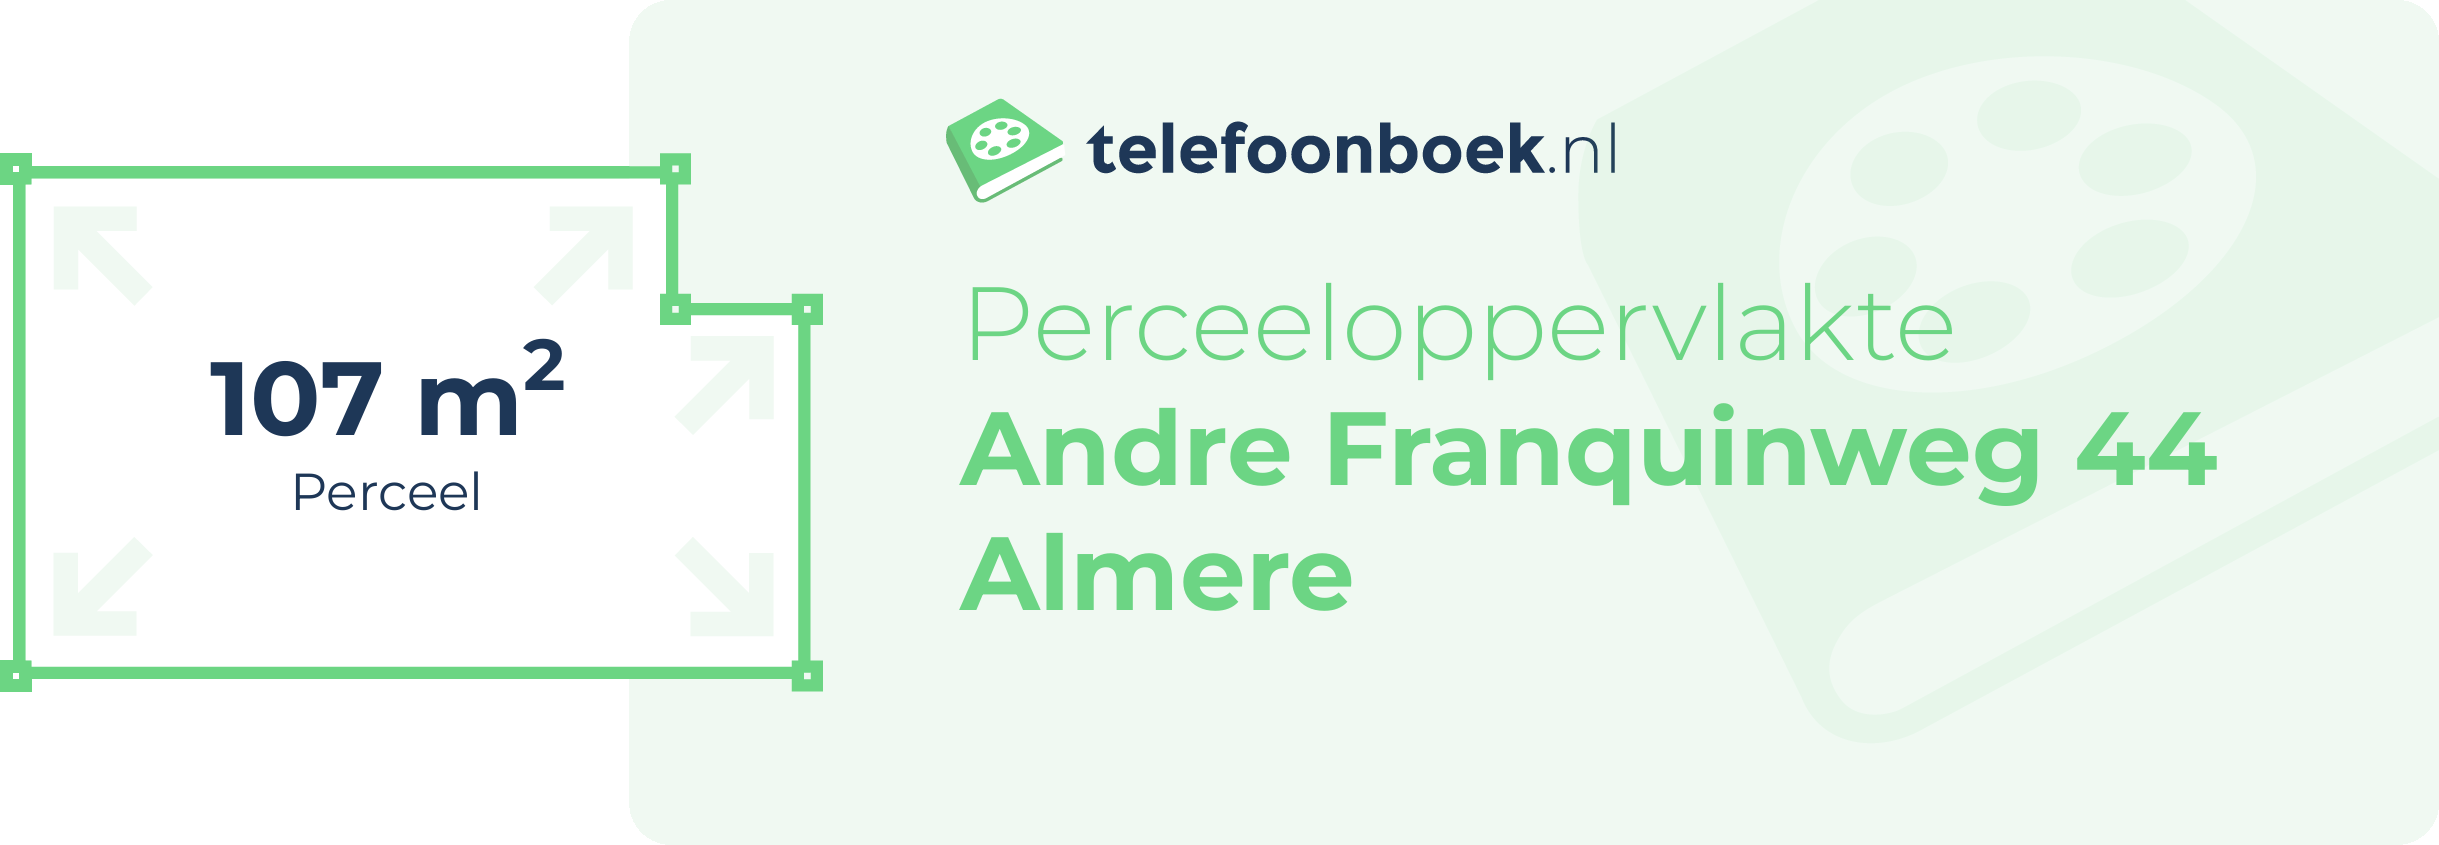 Perceeloppervlakte Andre Franquinweg 44 Almere